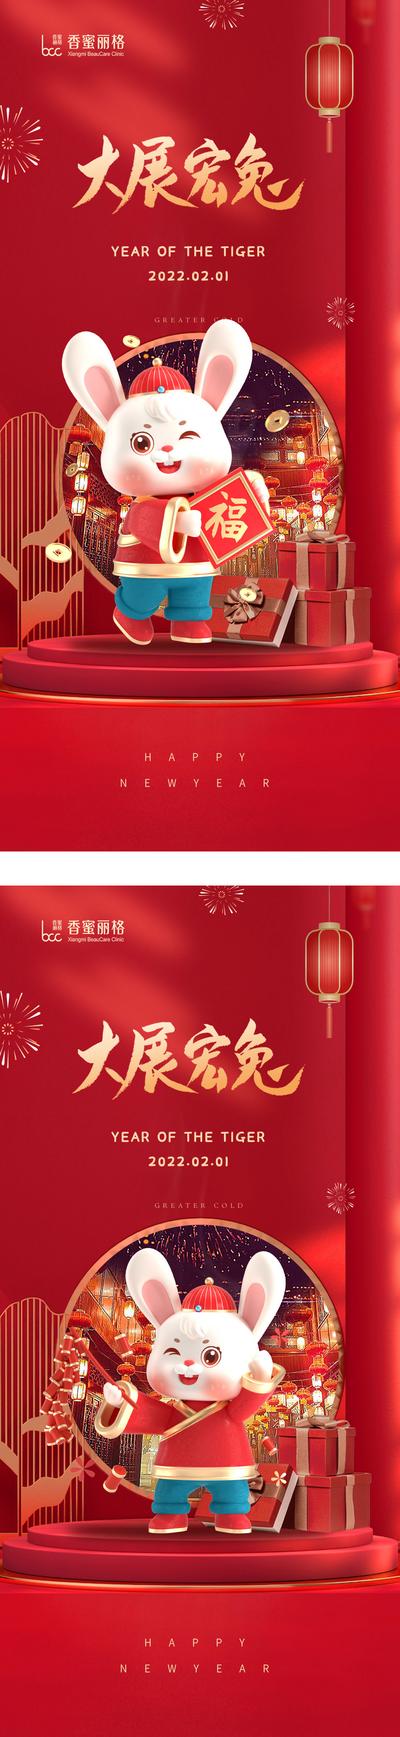 南门网 海报 房地产 中国传统节日 春节 兔年 兔子 创意